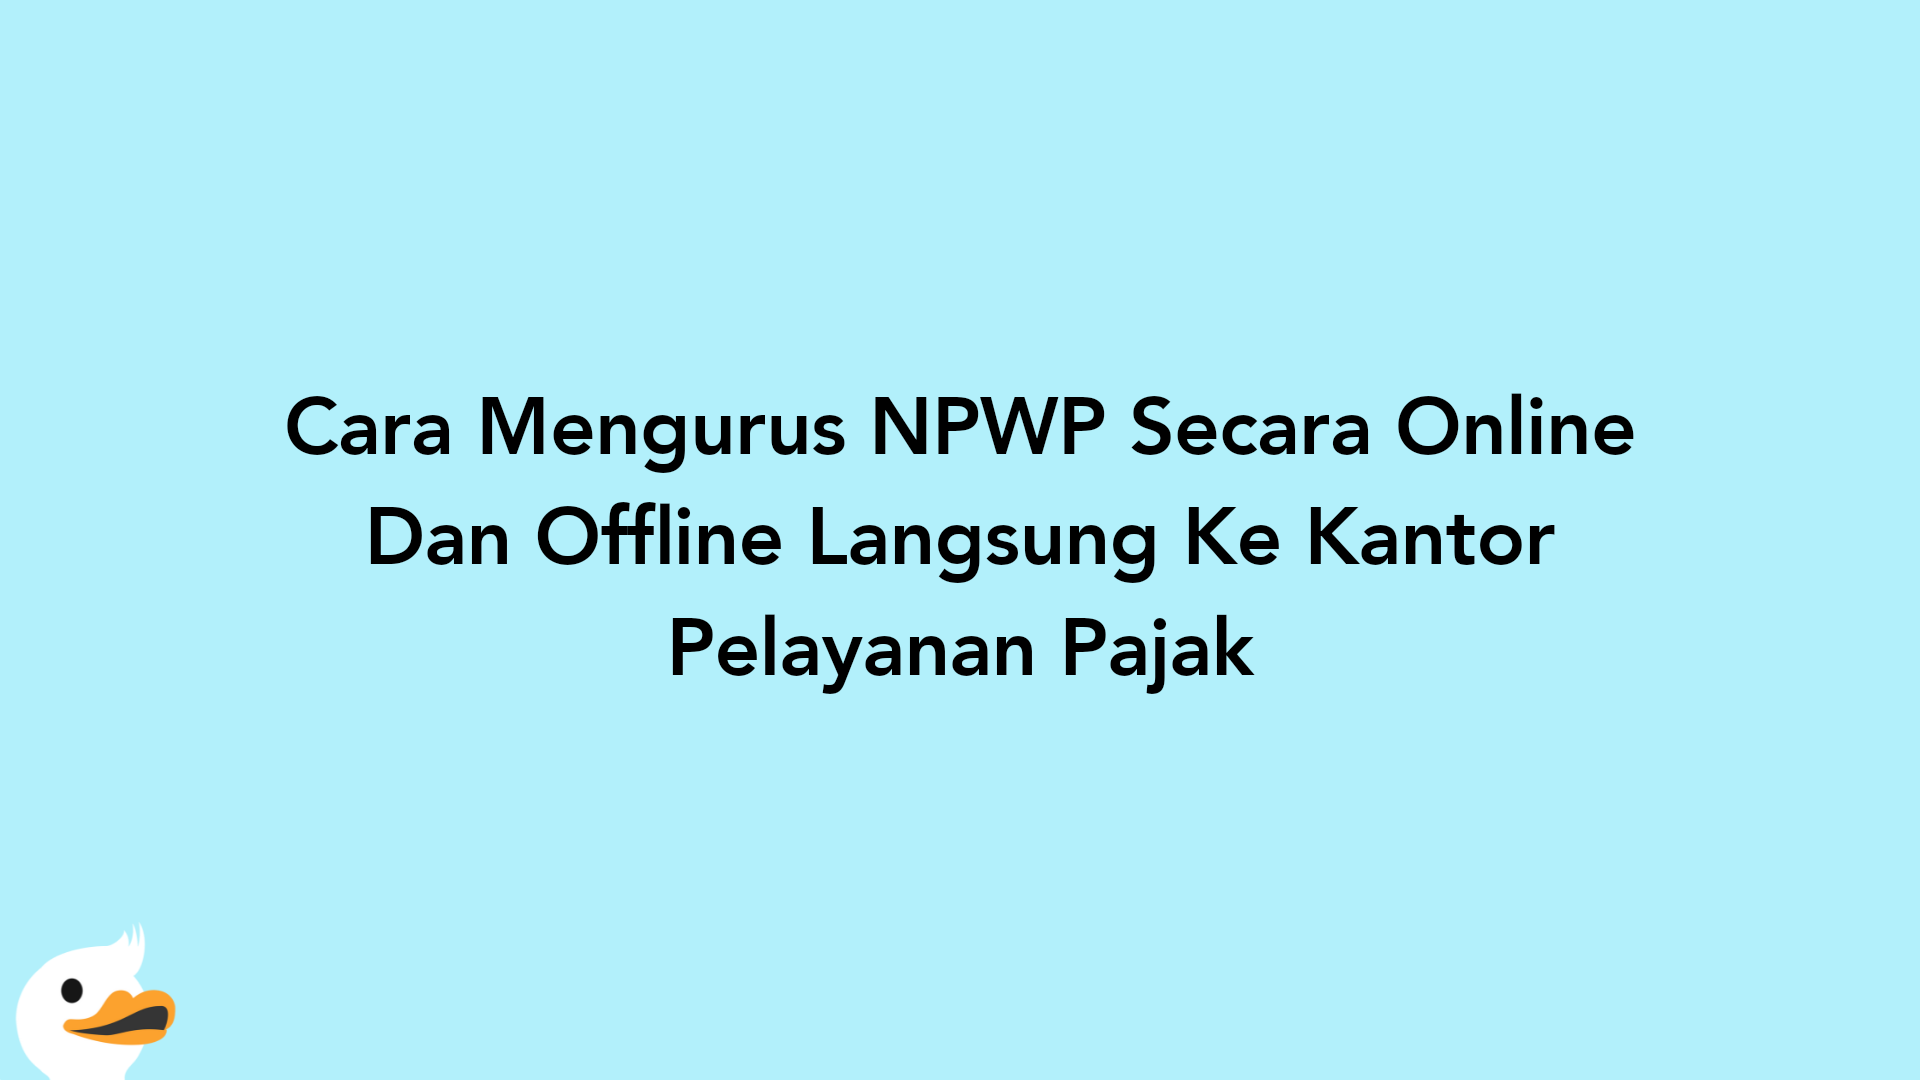 Cara Mengurus NPWP Secara Online Dan Offline Langsung Ke Kantor Pelayanan Pajak